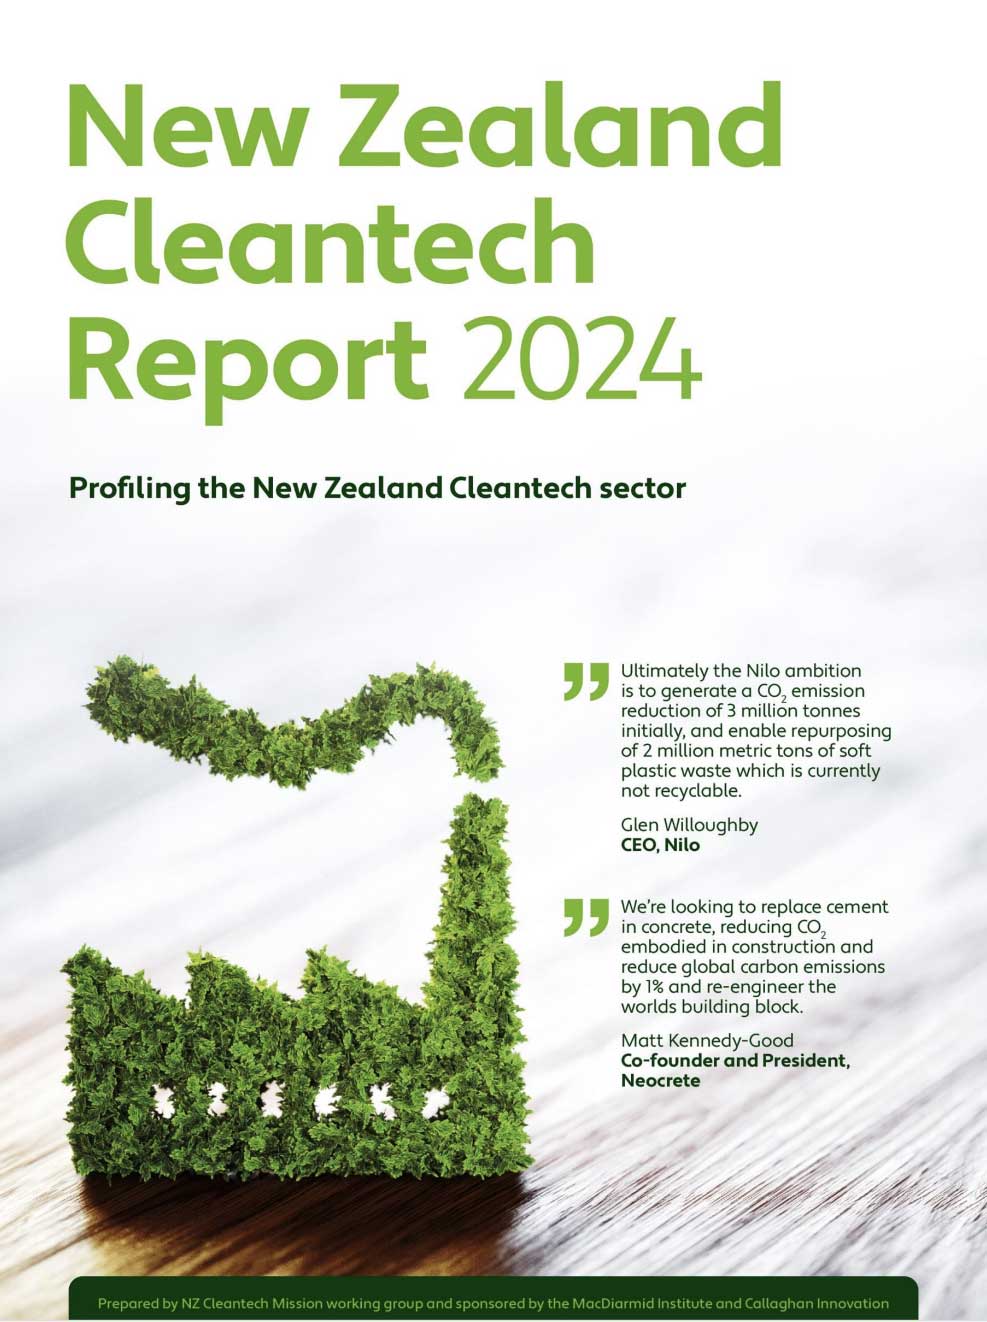 NZ-Cleantech-Report-2024.jpg